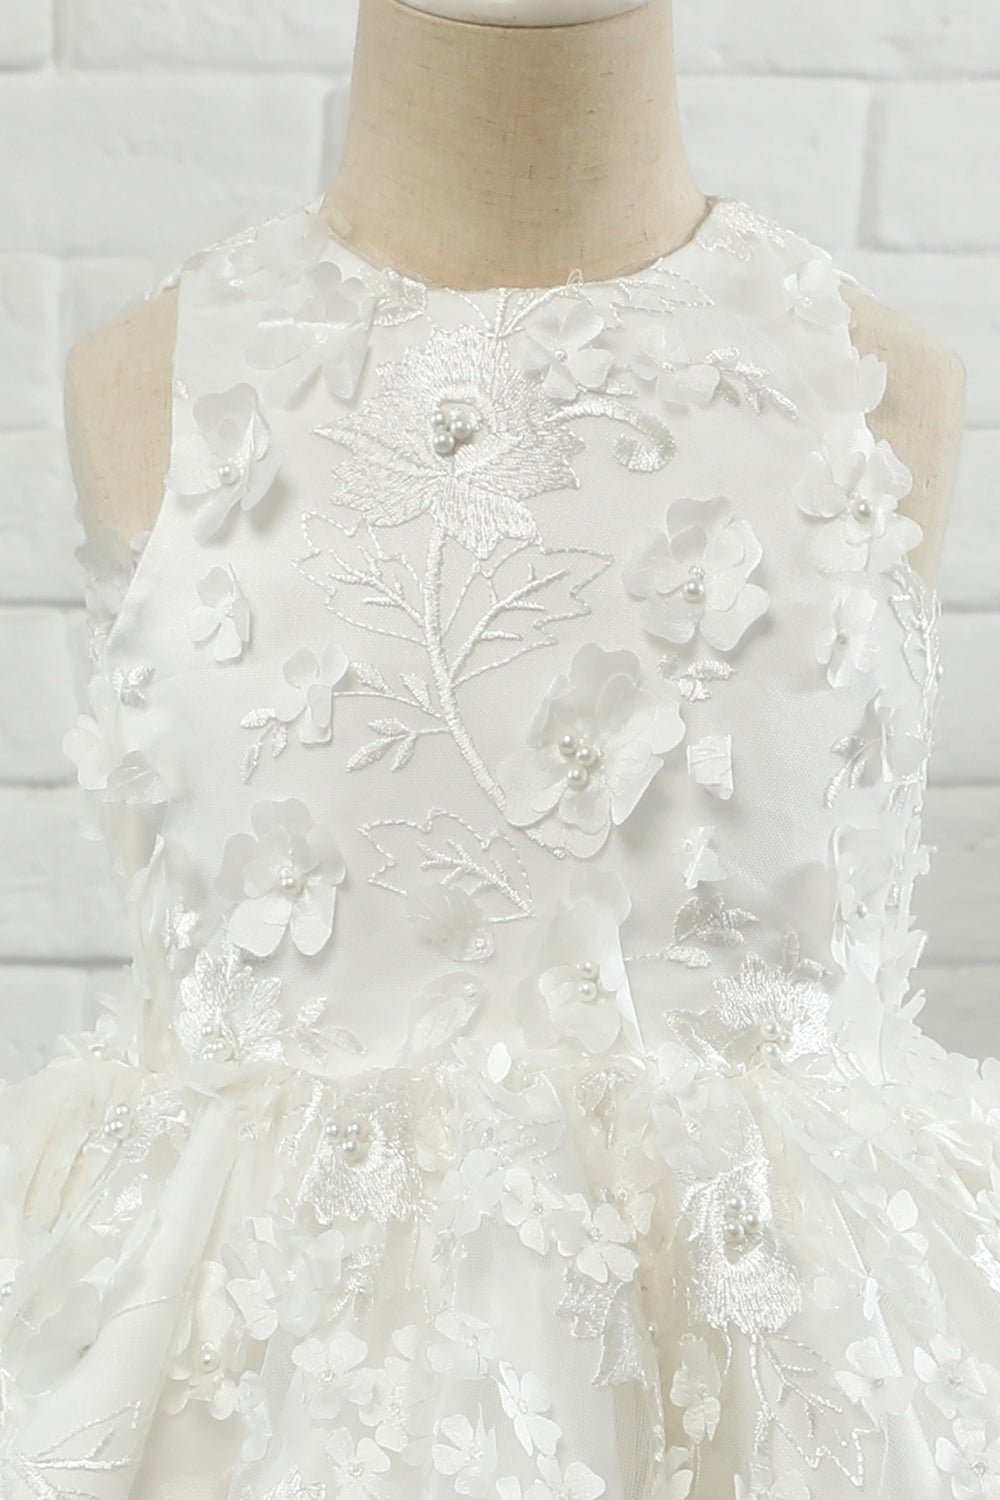 White Applique Sleeveless Flower Girl Dress